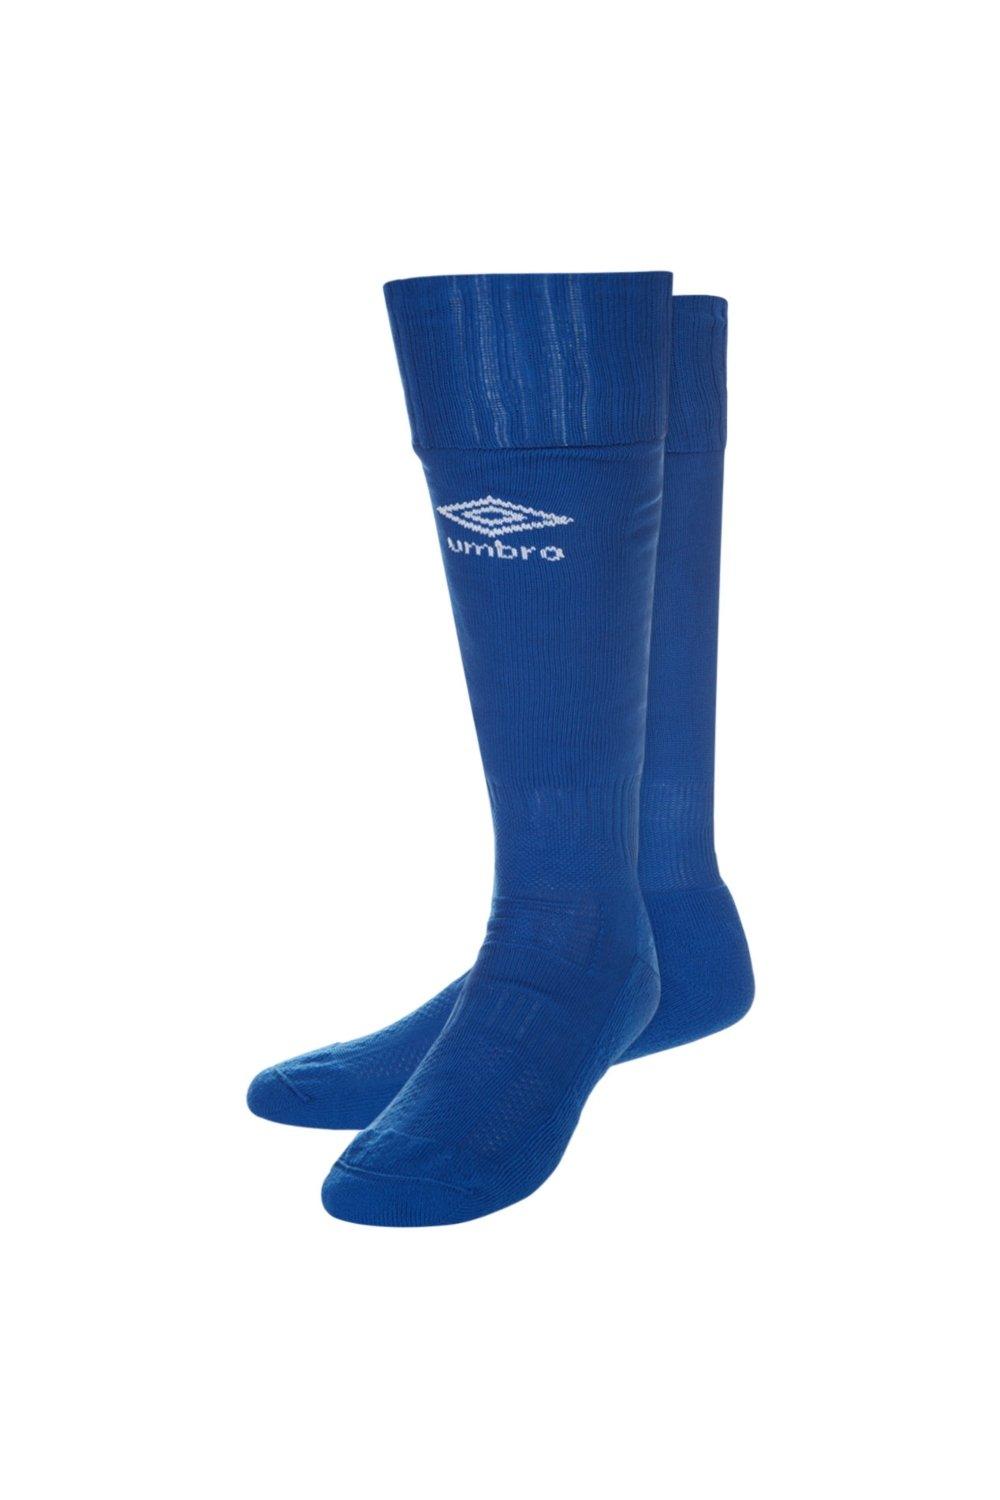 Футбольные носки Classico Umbro, синий